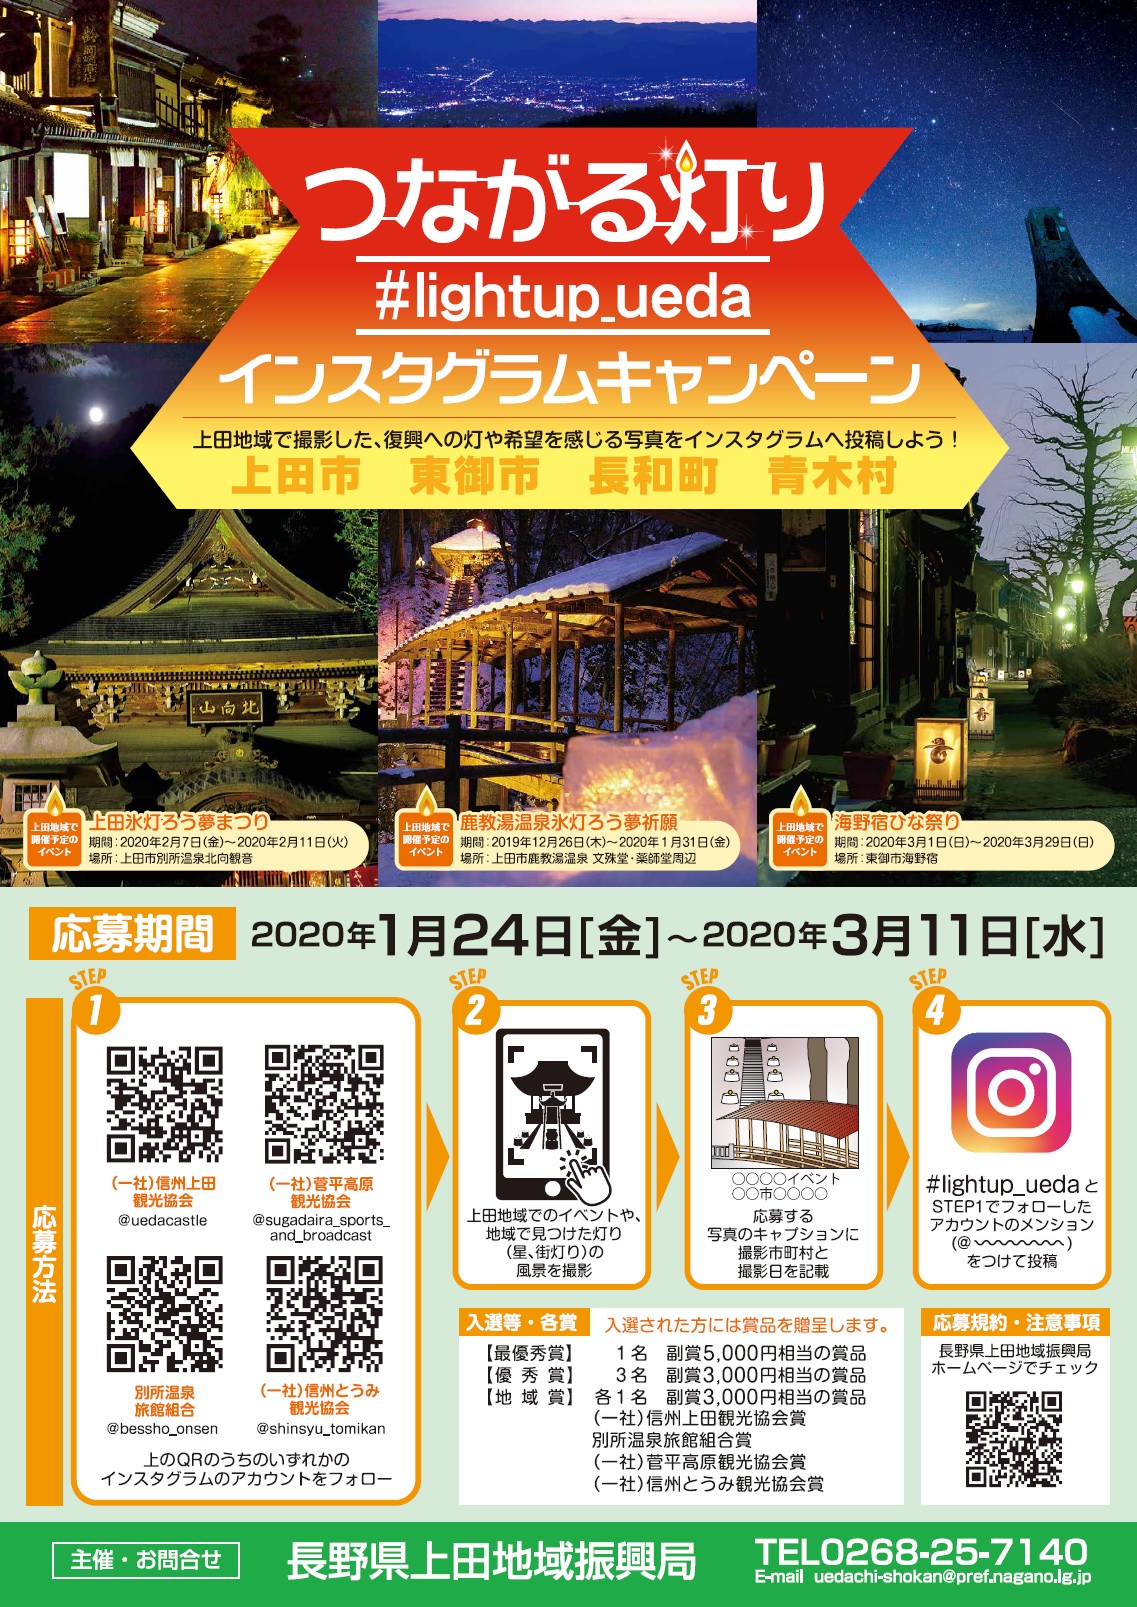 つながる灯り Lightup Ueda インスタグラムキャンペーン 一般社団法人 信州とうみ観光協会